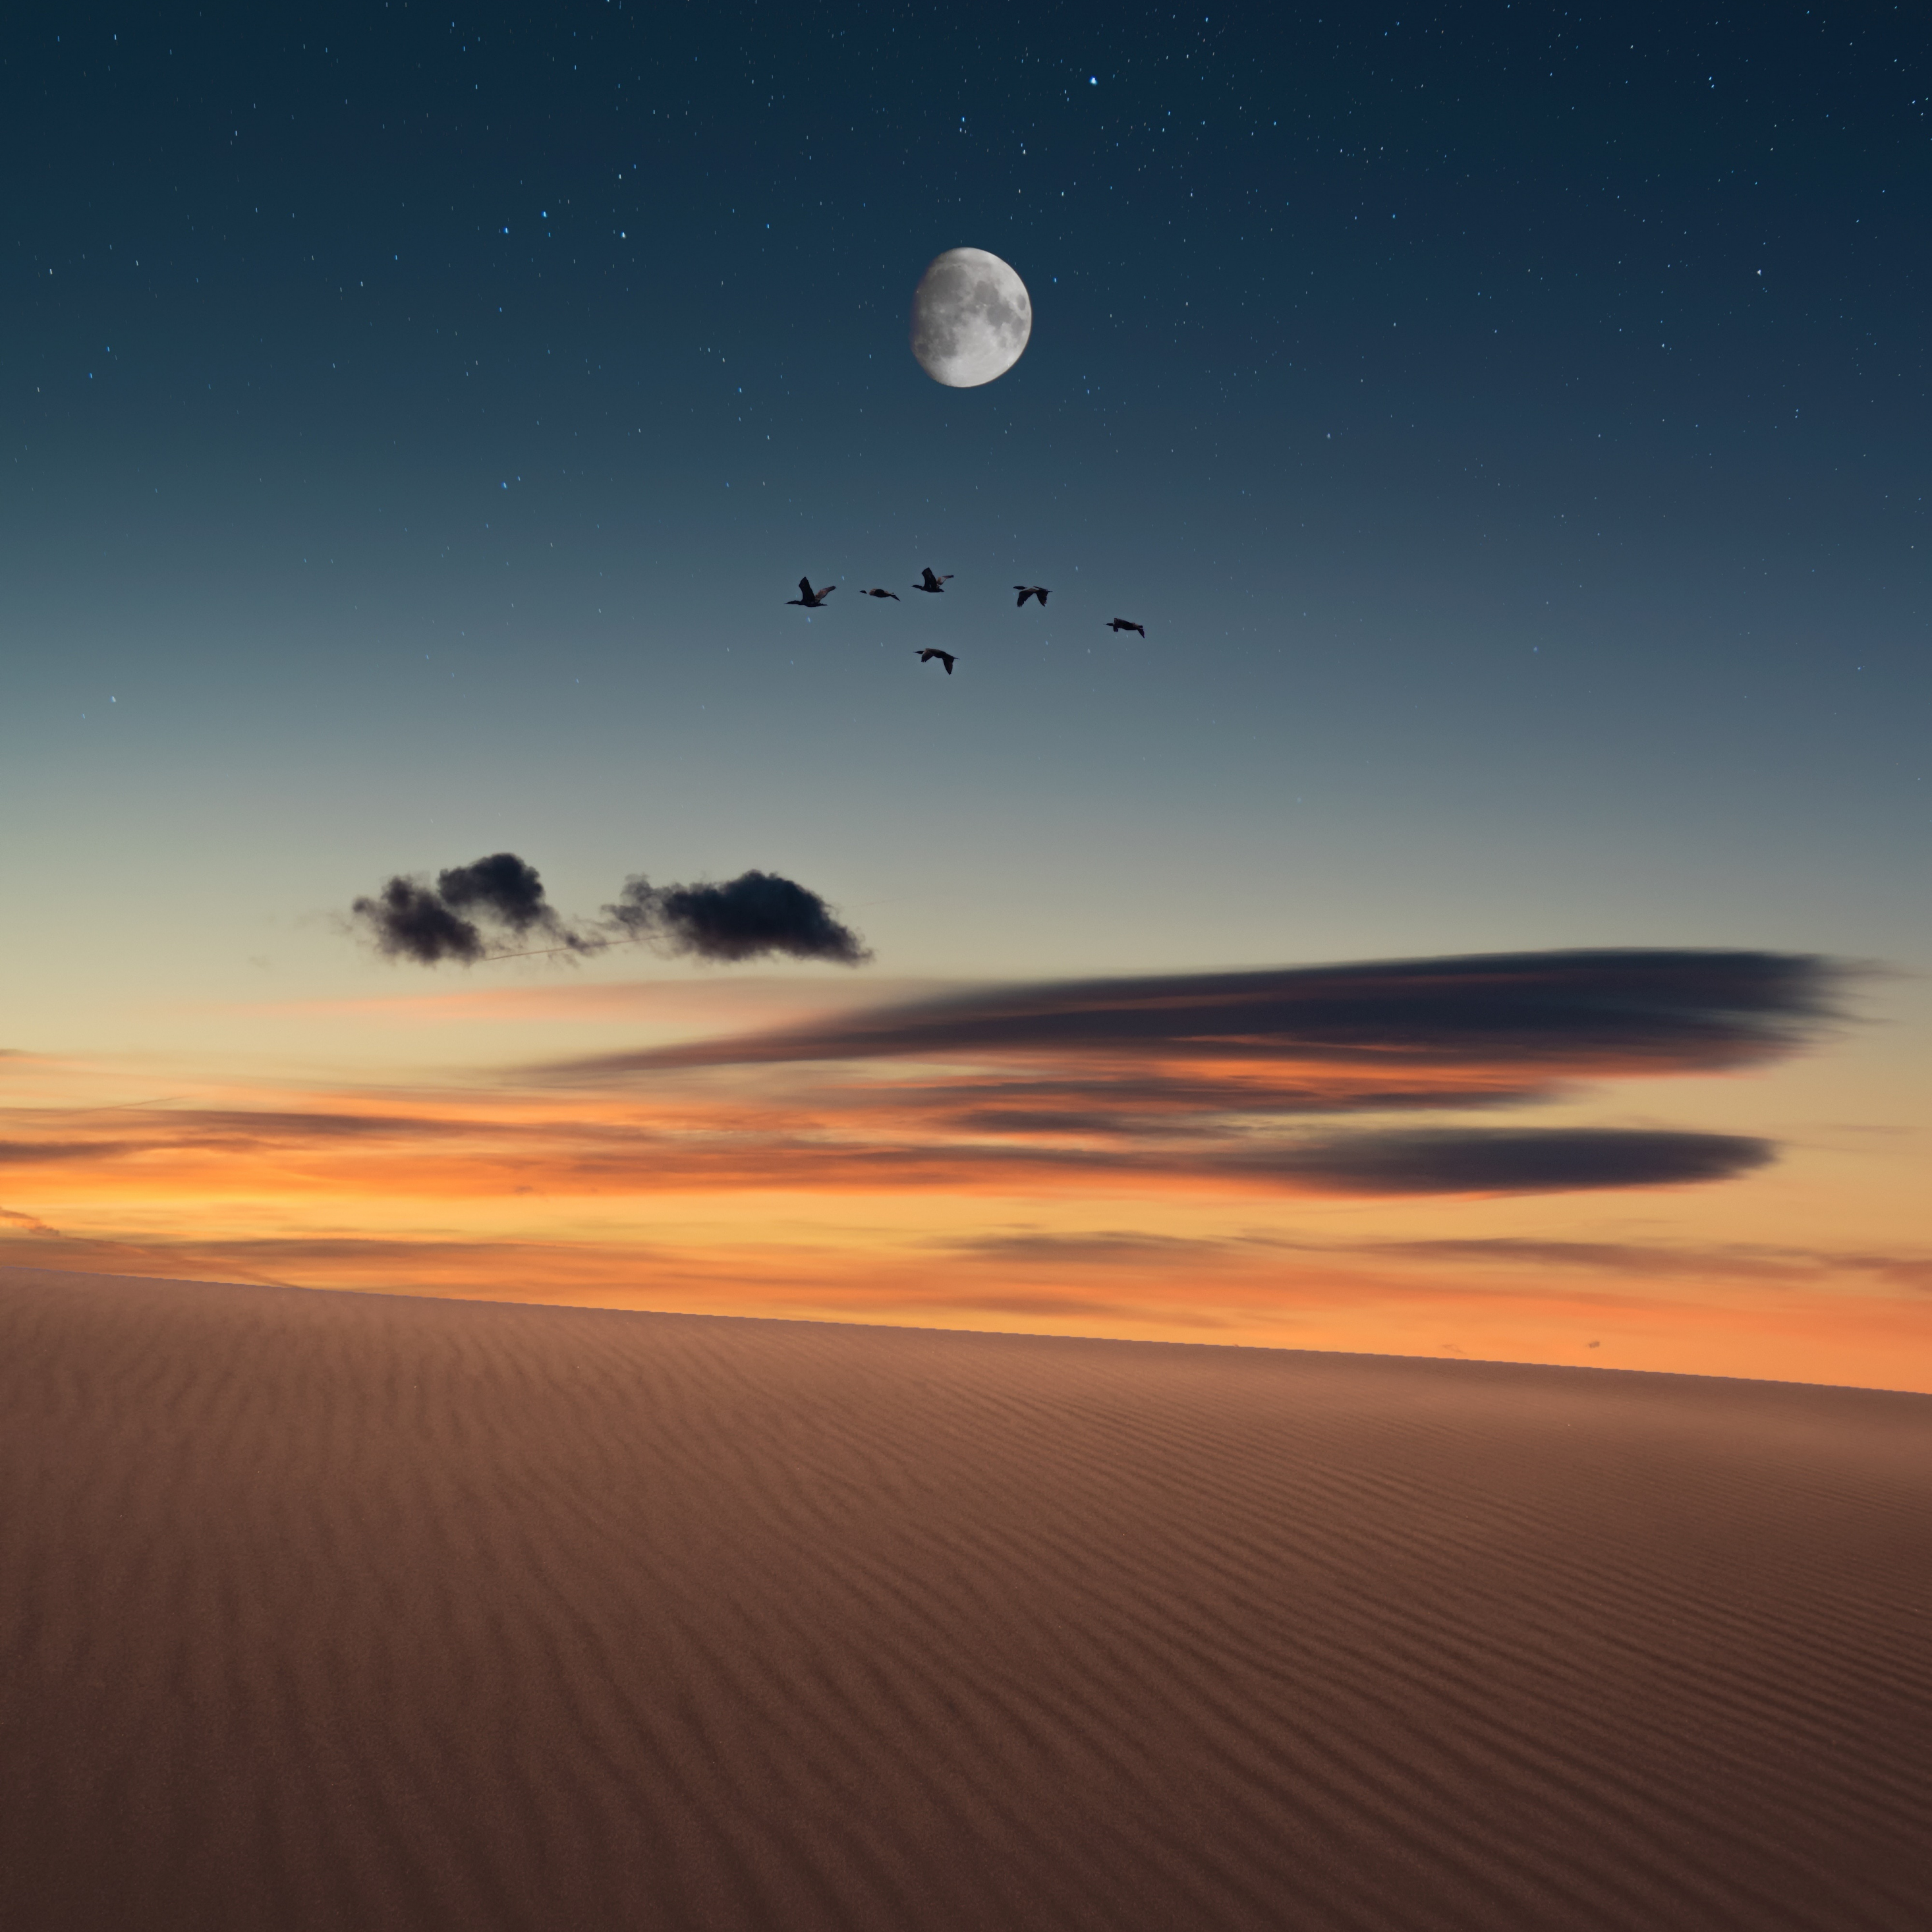 Full moon, birds, landscape, desert, 2932x2932 wallpaper